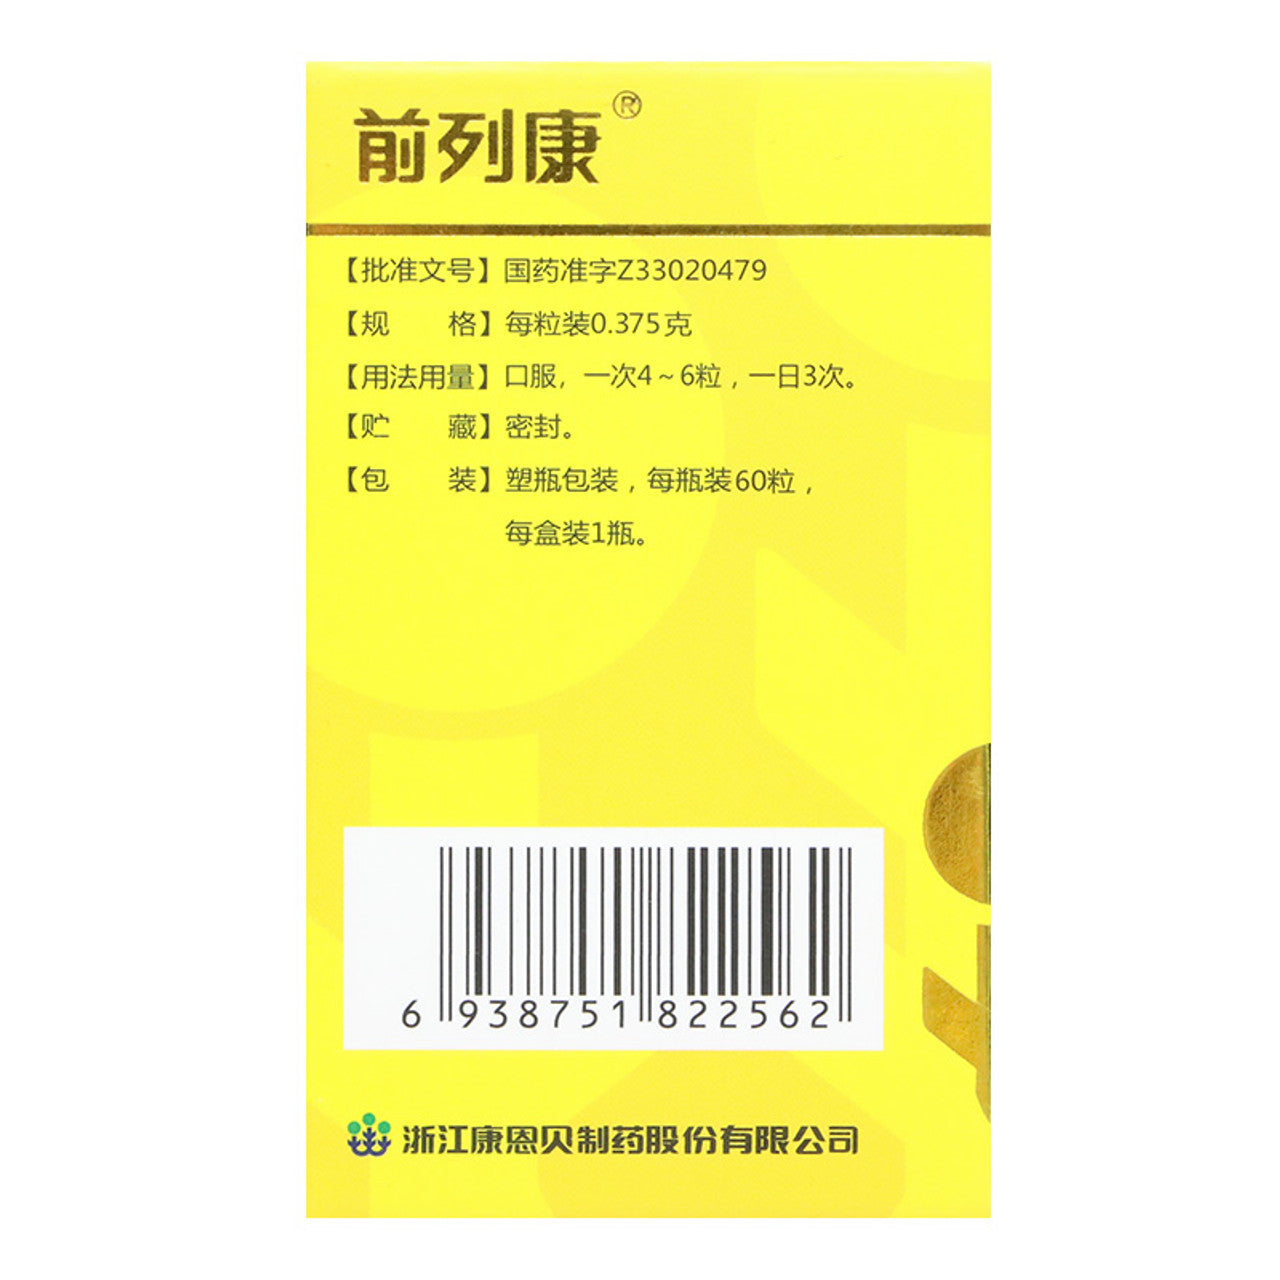 Herbal Supplement Pule'an Jiaonang / Pulean Jiaonang / Pulean Capsules / Pu Le An Jiao Nang / Pu Le An Capsules